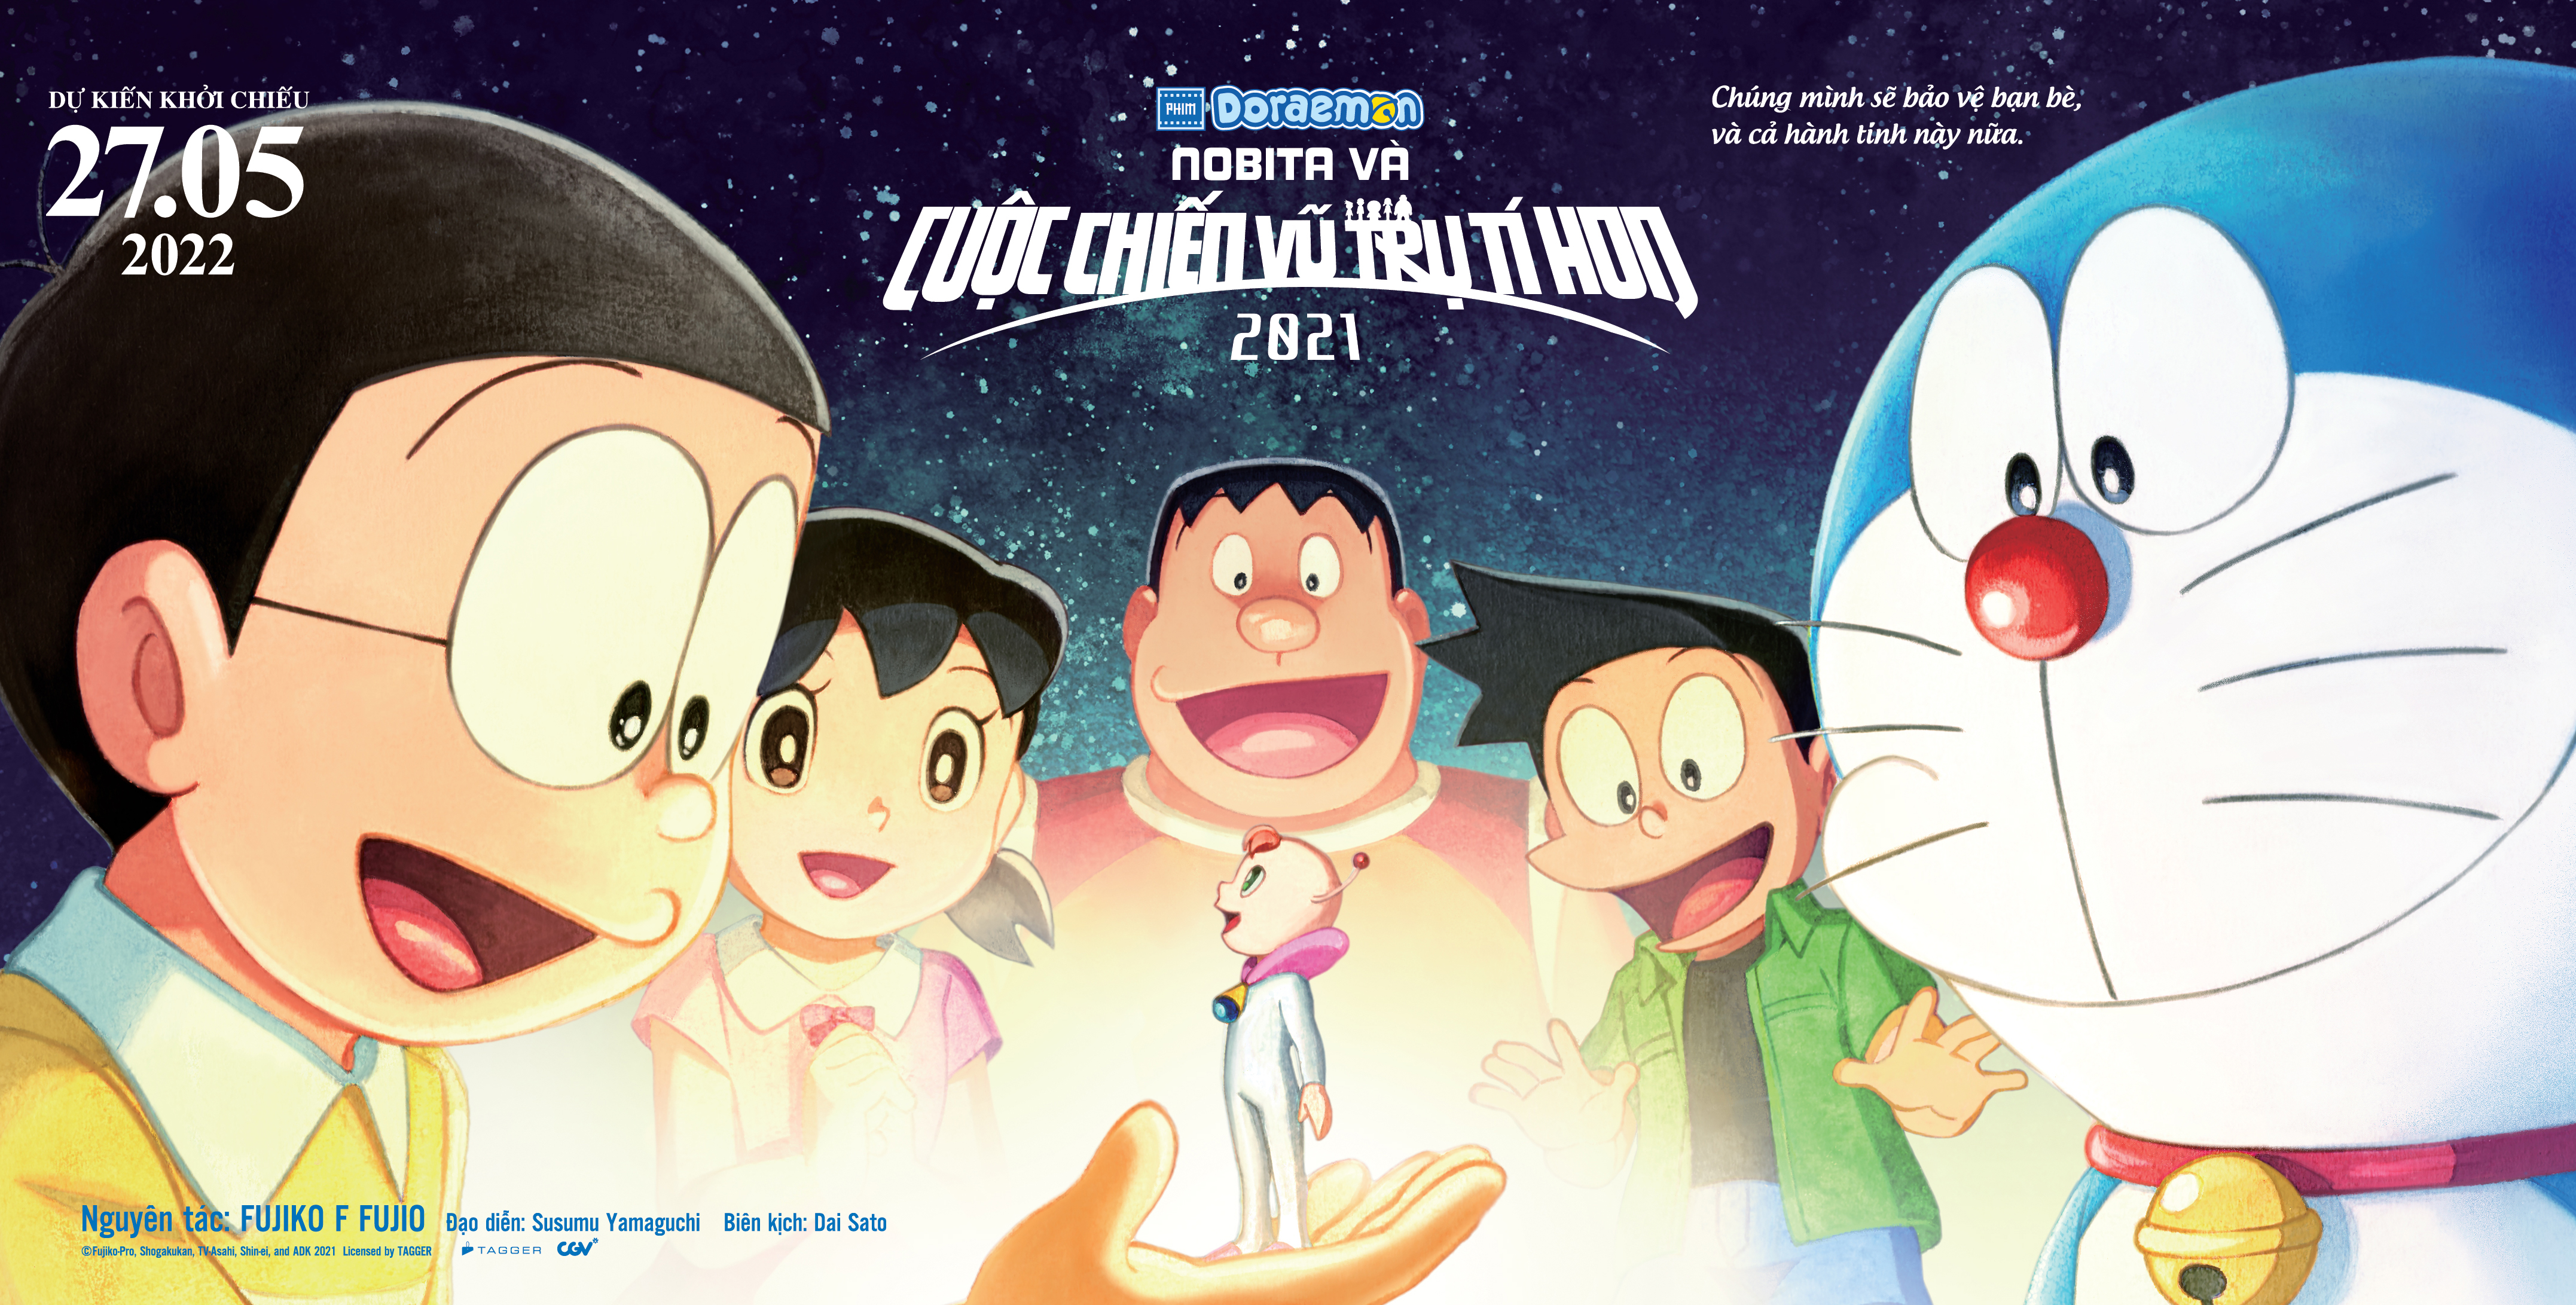 Những phim điện ảnh hay nhất về Mèo máy Doraemon  VOV2VN